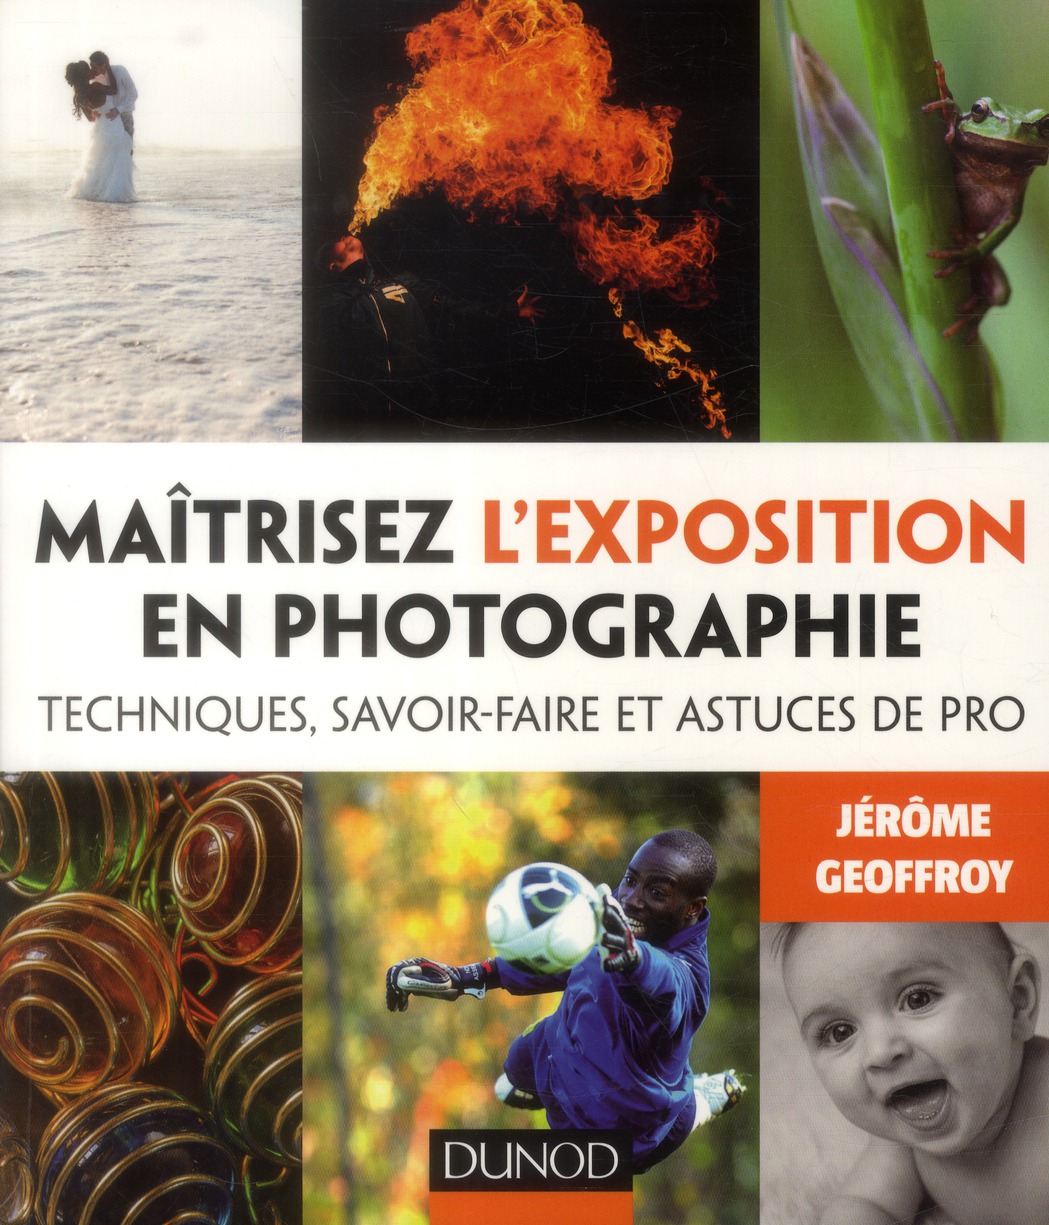 MAITRISEZ L'EXPOSITION EN PHOTOGRAPHIE - TECHNIQUES, SAVOIR-FAIRE ET ASTUCES DE PRO